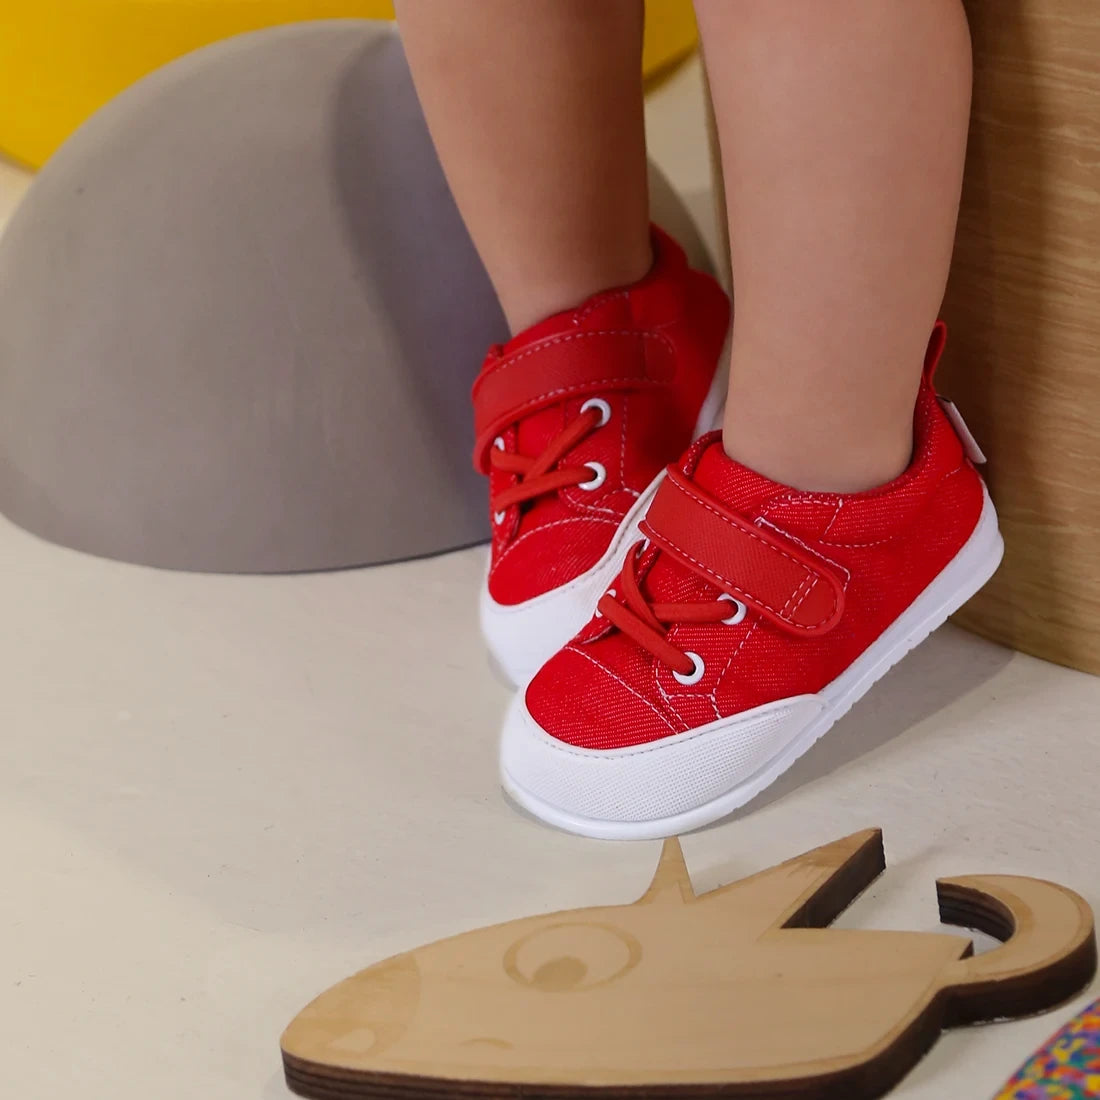 Paterna Feroz, zapatillas minimalistas de colores para bebés